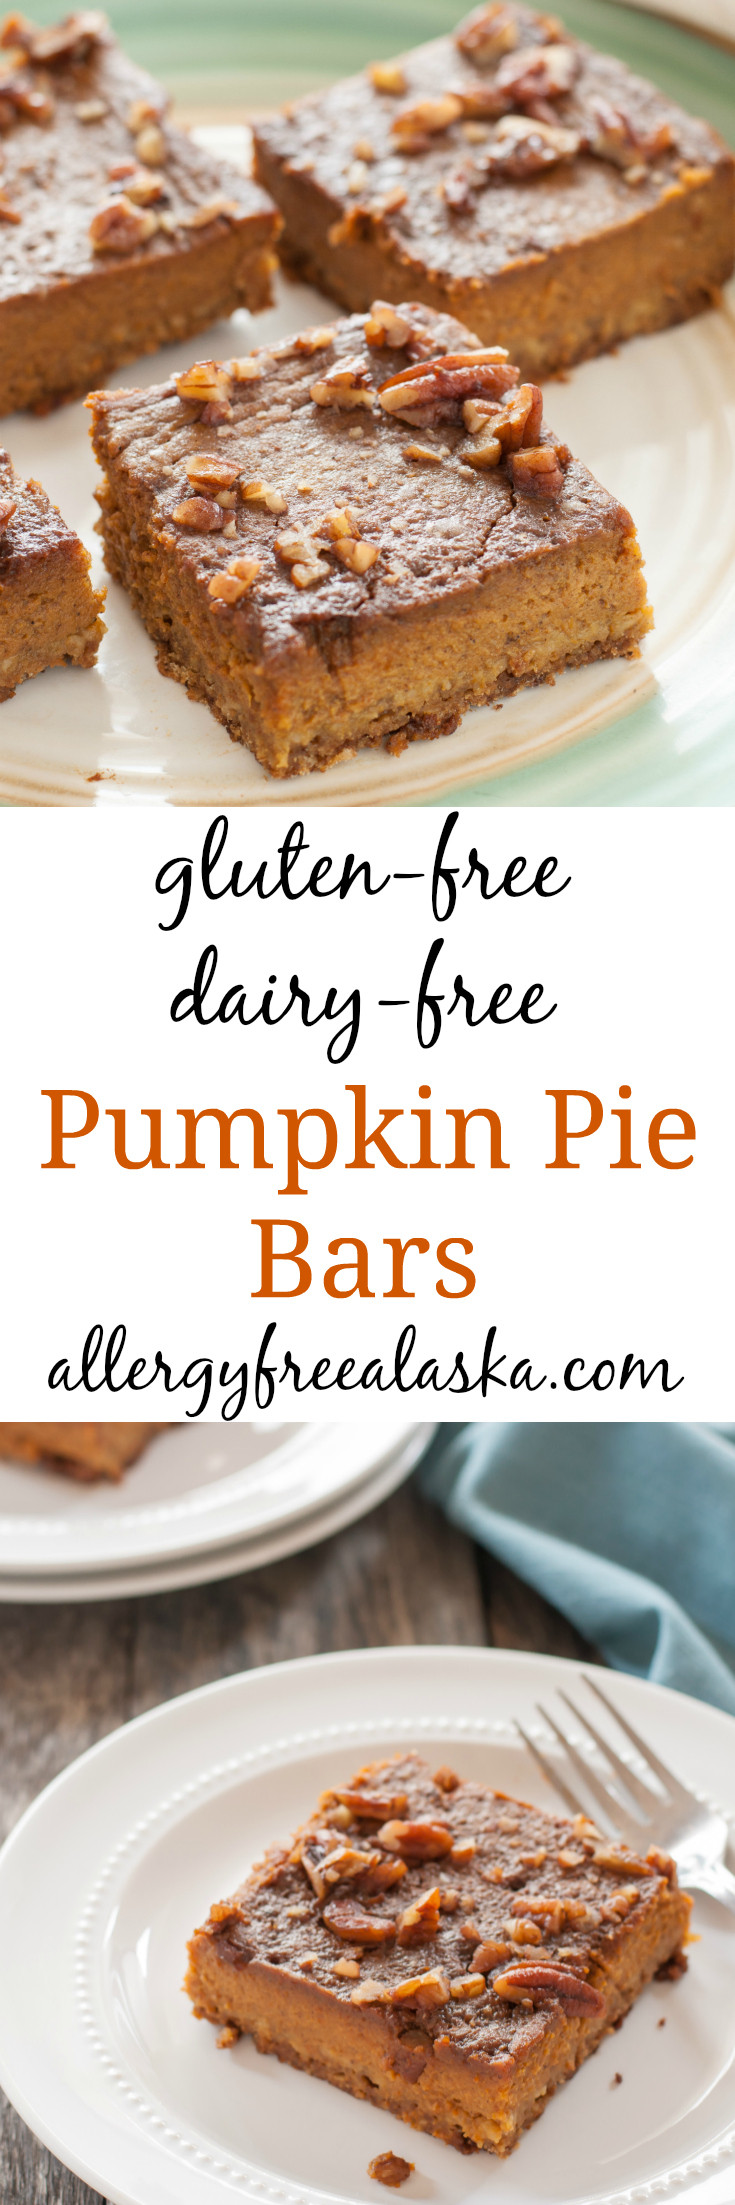 Dairy Free Gluten Free Pumpkin Pie
 gluten free dairy free pumpkin pie bar recipe from allergy